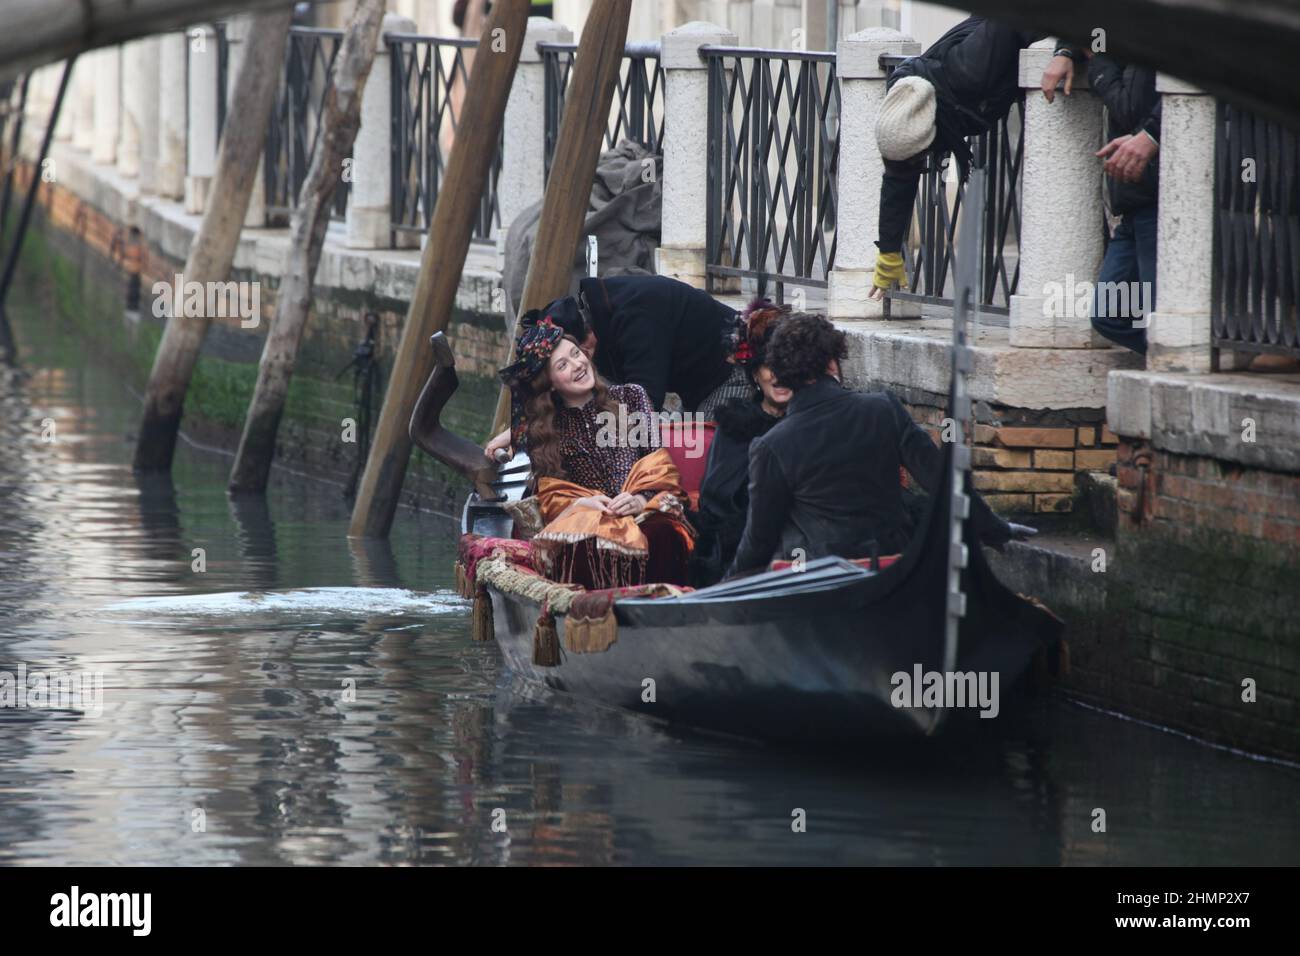 L'actrice Dakota Fannin, l'actrice Claudua Cardinale et l'actrice Riccardo Scamarcio pendant le tournage du film Effie Gray à Venise. Banque D'Images